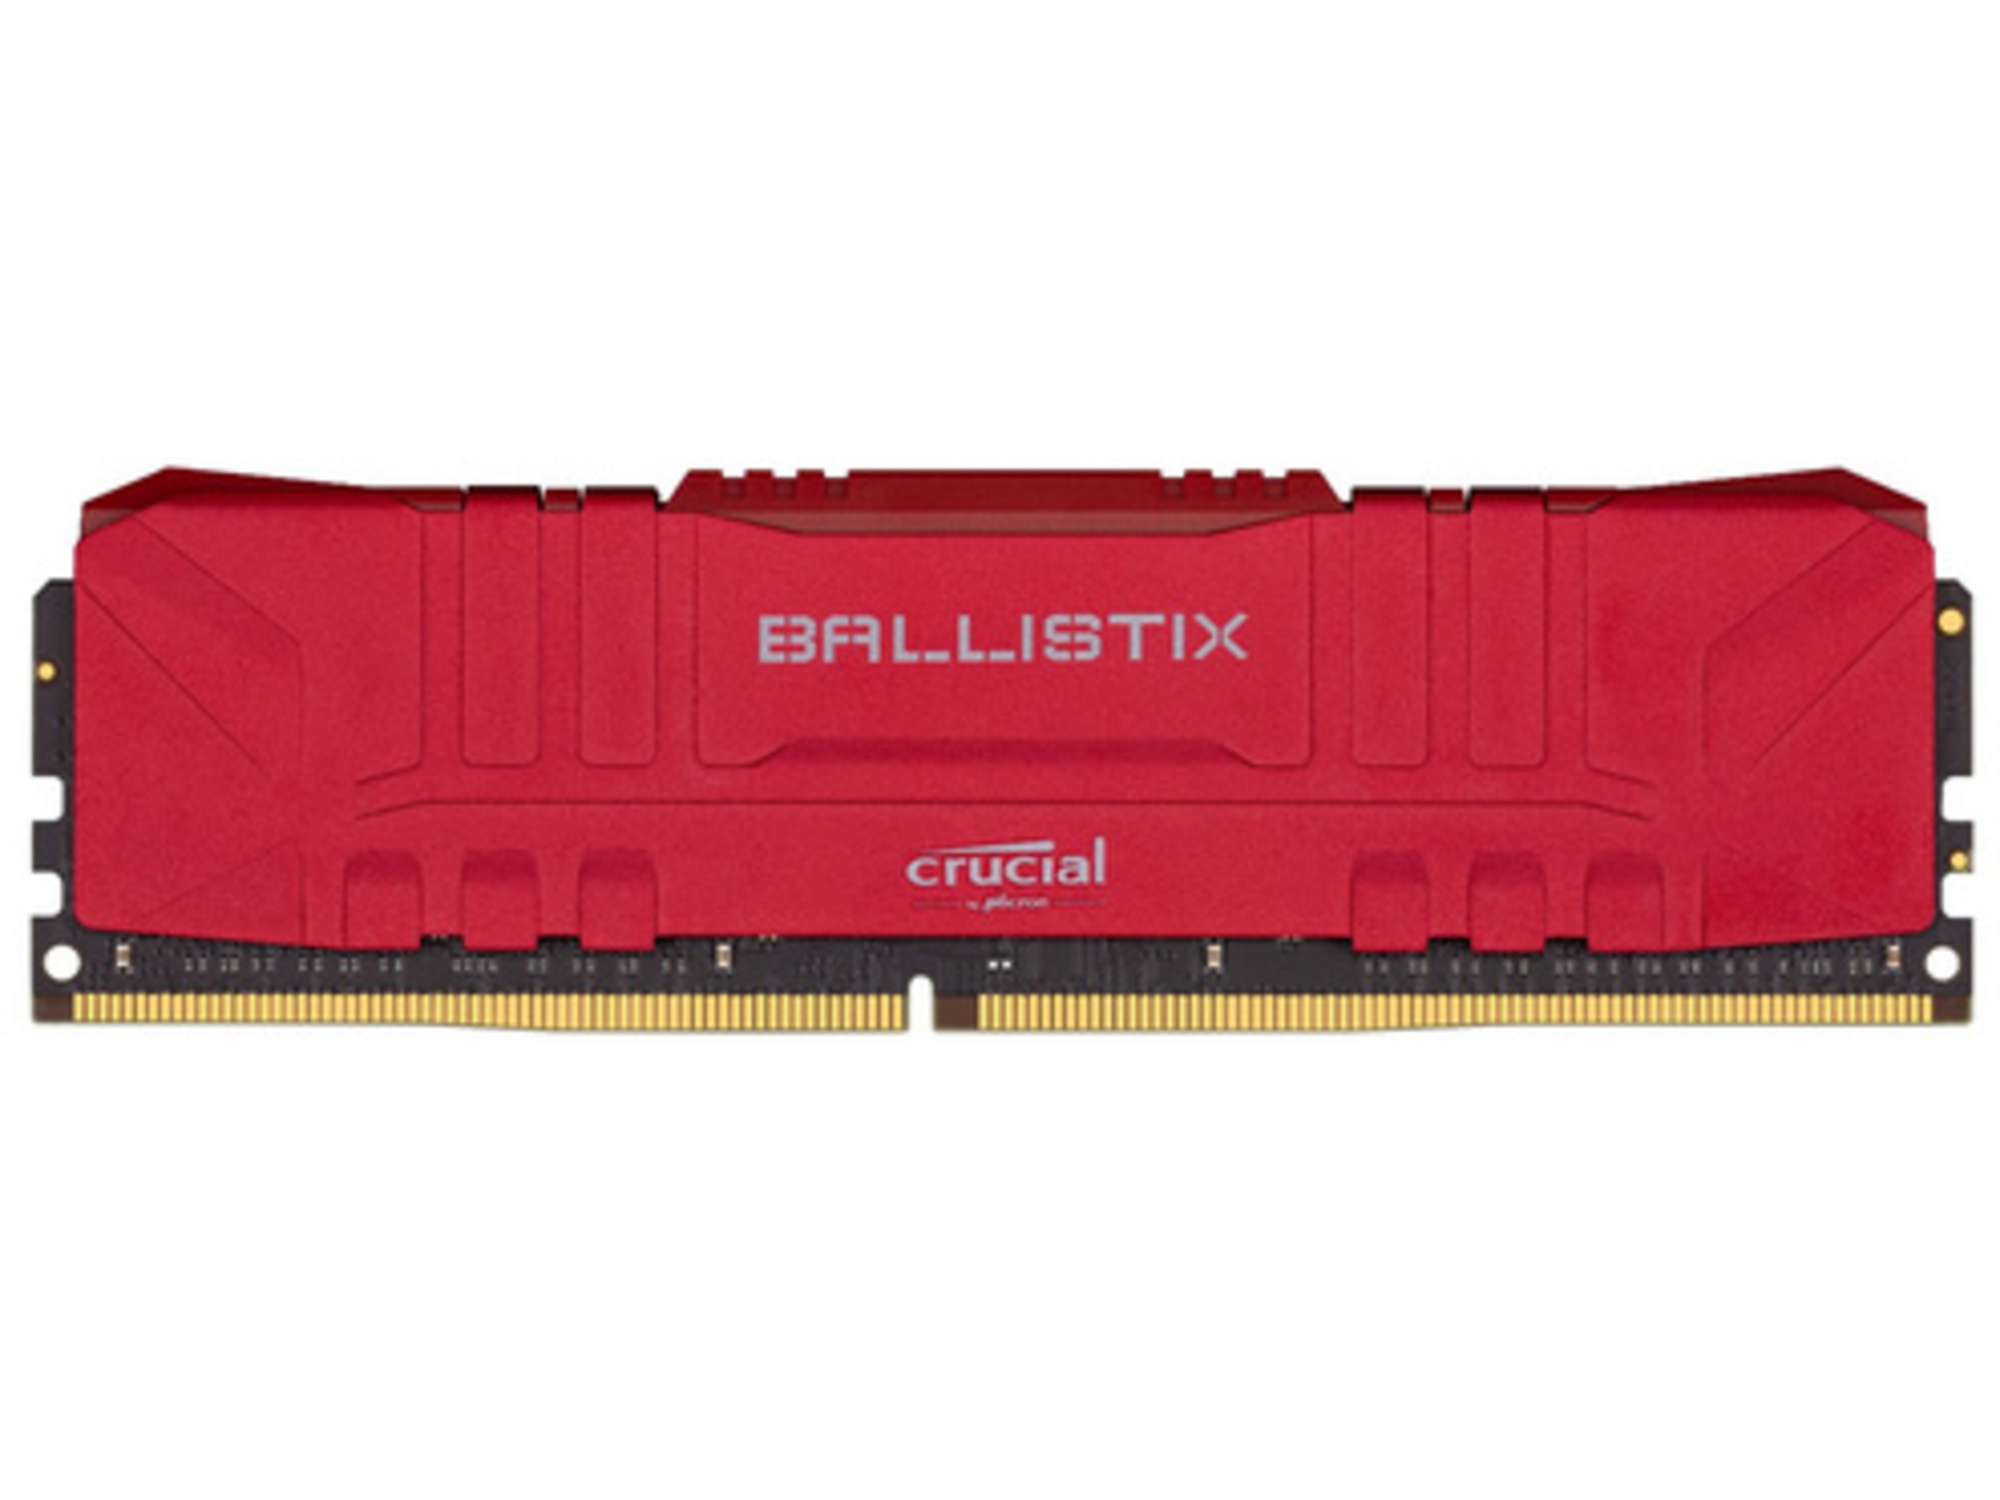 CRUCIAL RAM DDR4 8GB PC4-25600 3200MT/s CL16 1.35V Crucial Ballistix Red